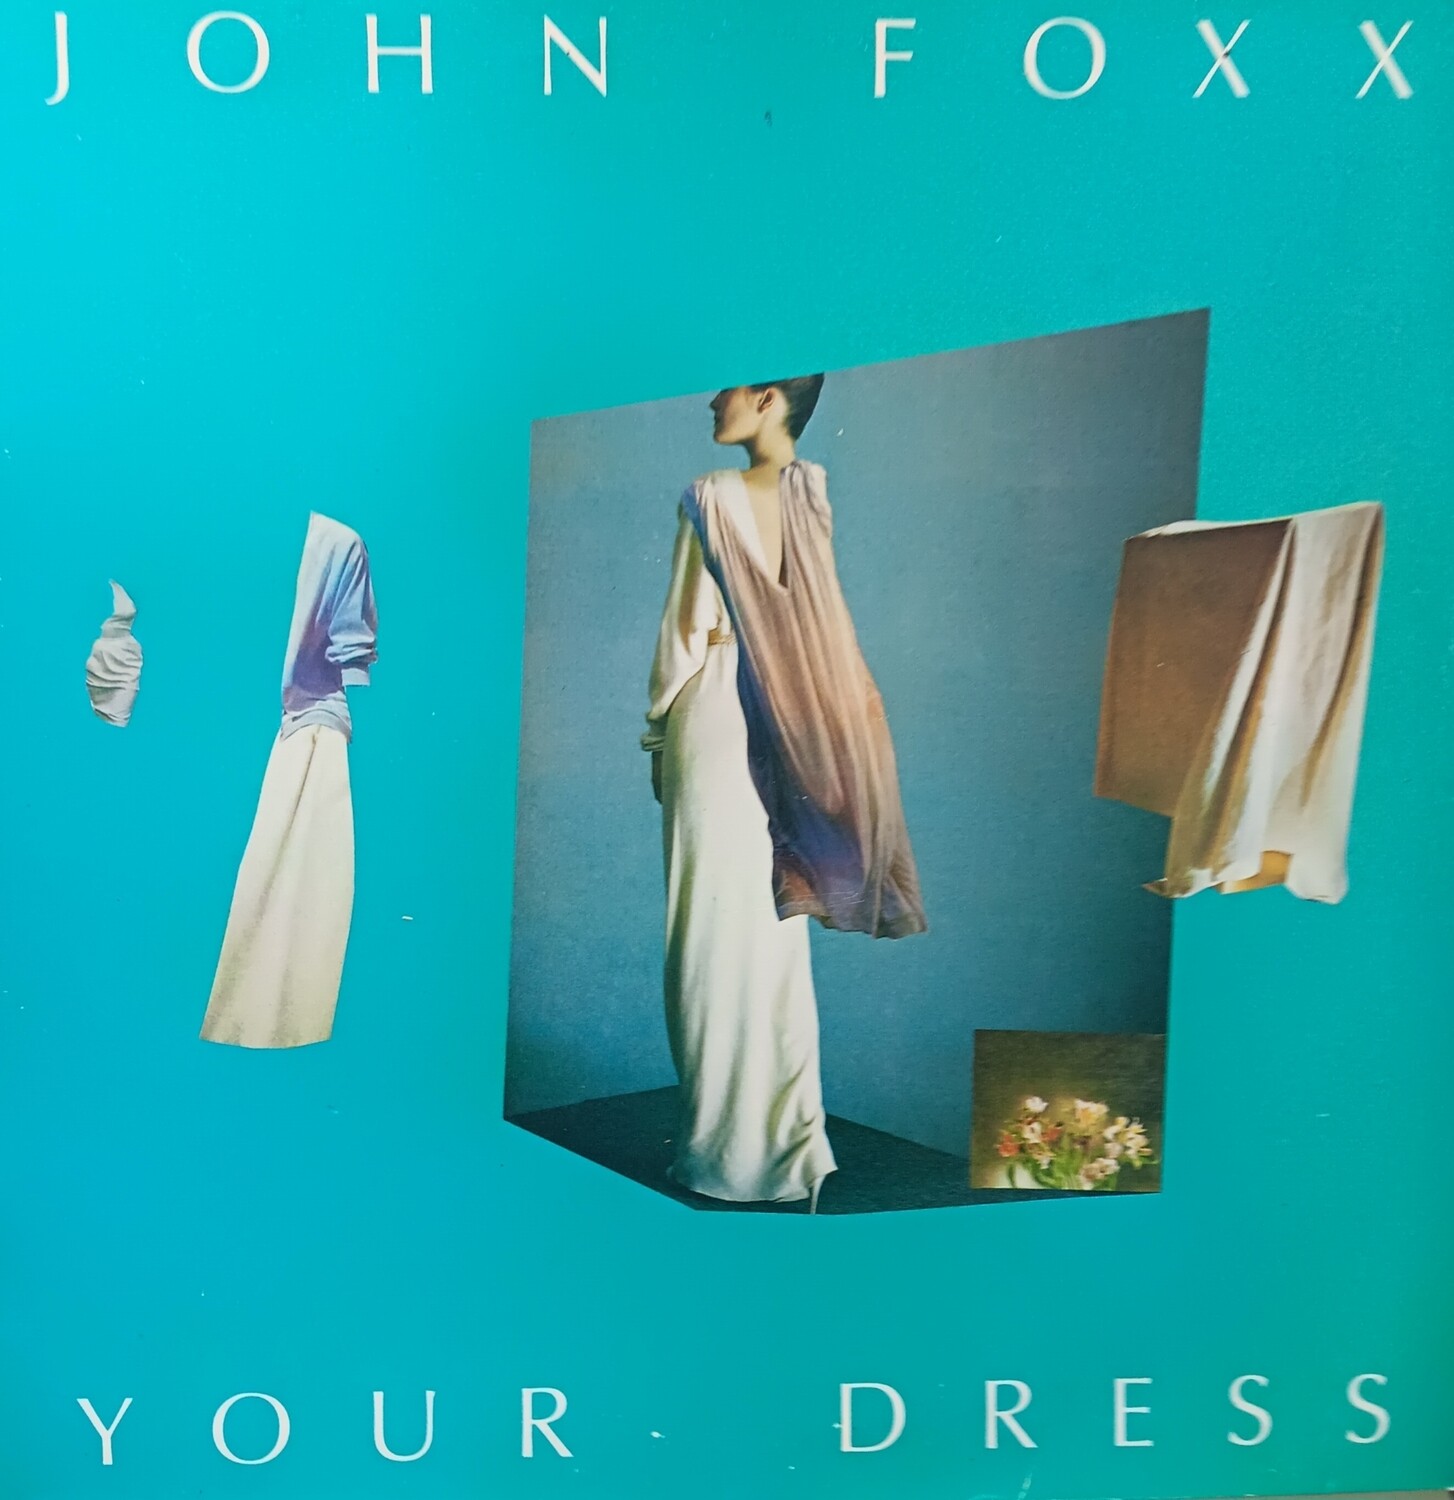 JOHN FOXX - Your dress (MAXI)